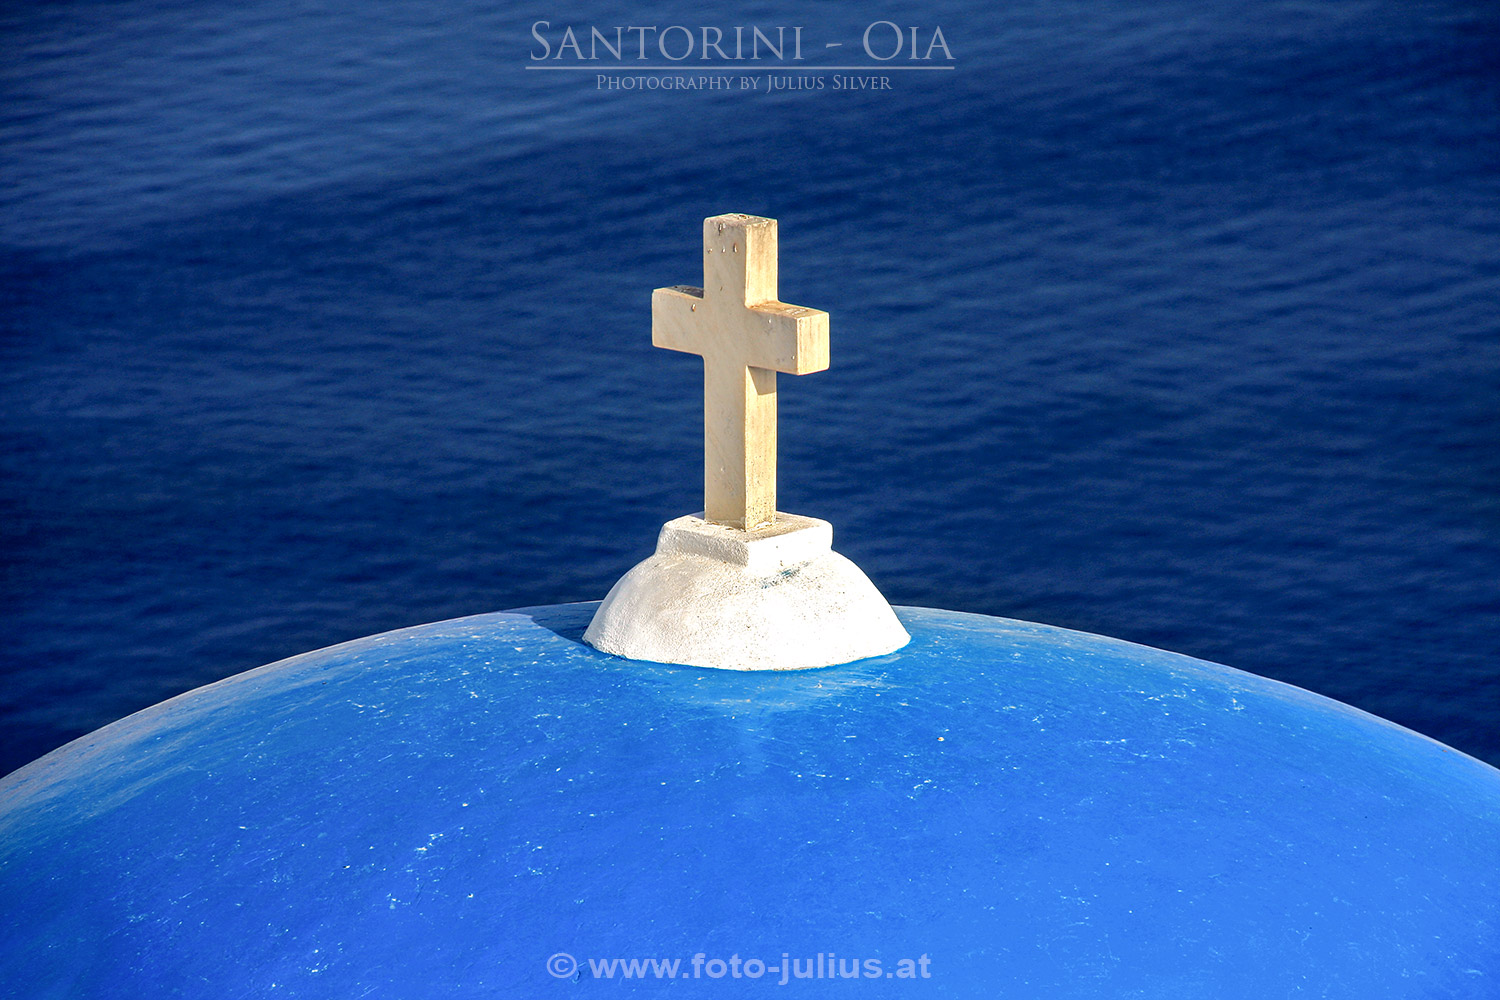 santorini006a_Ia_Oia_Santorini (1).jpg, 358kB